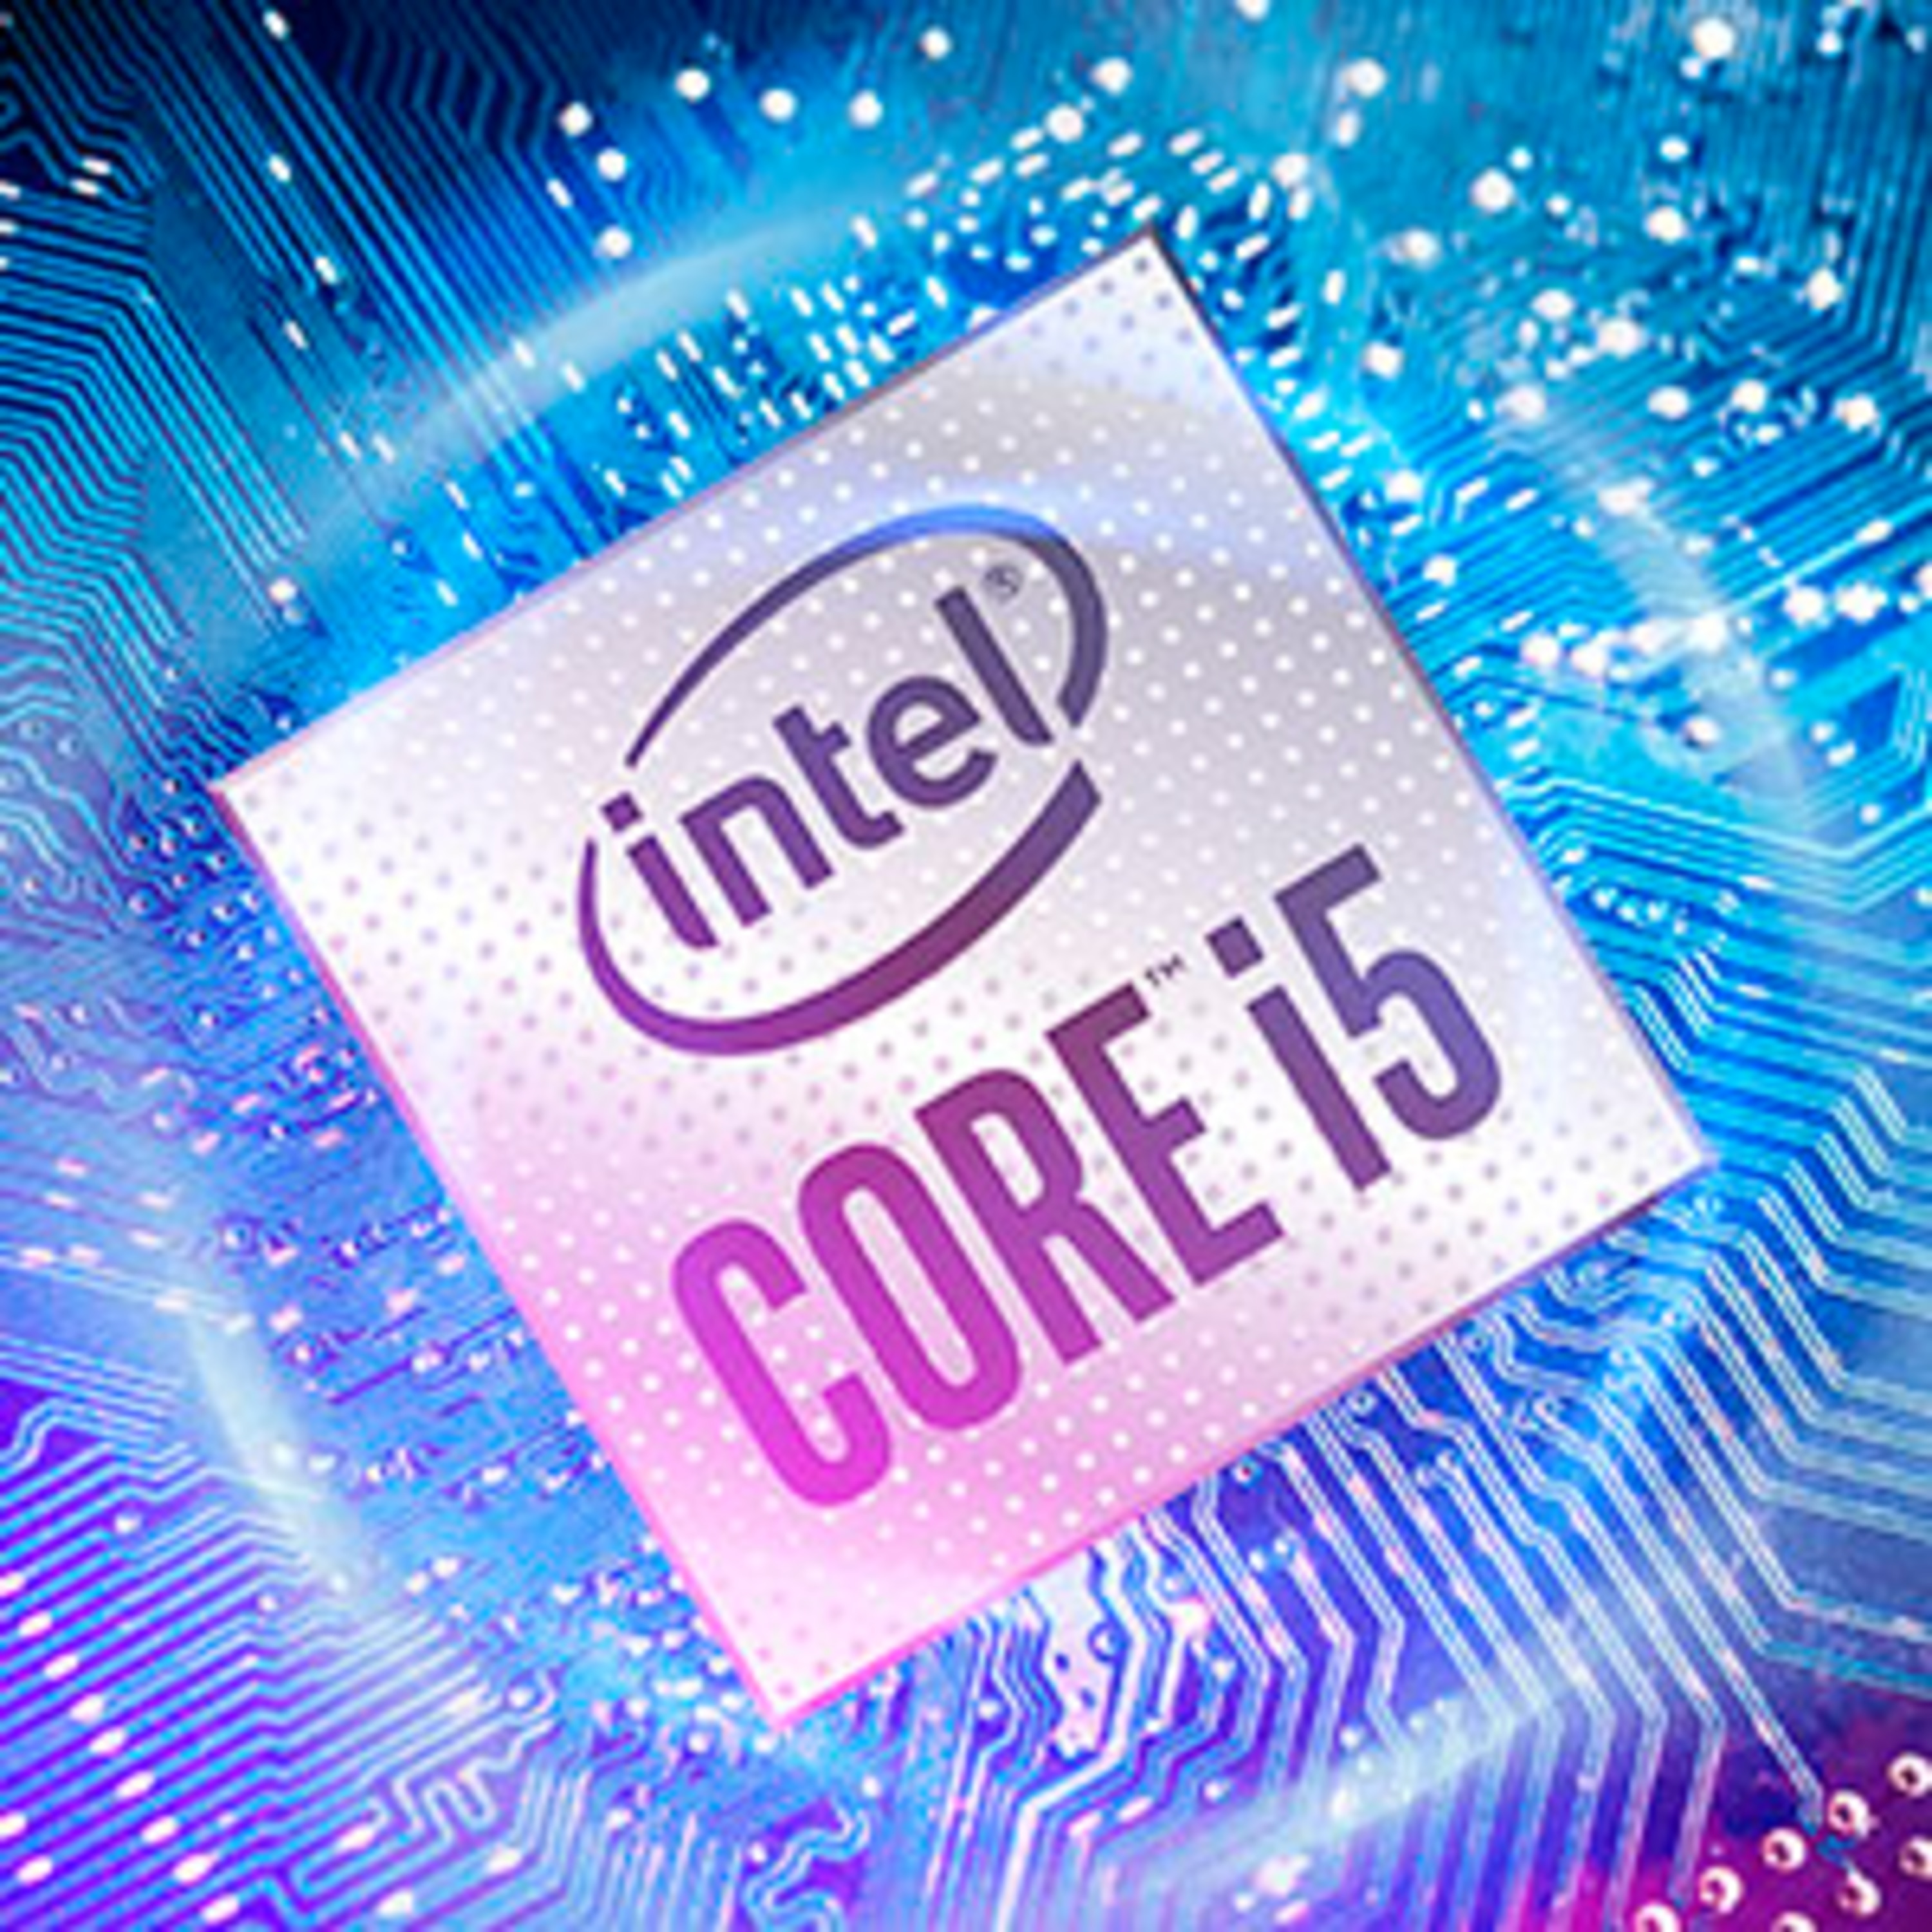 Intel® Core™ i5 Prozessor